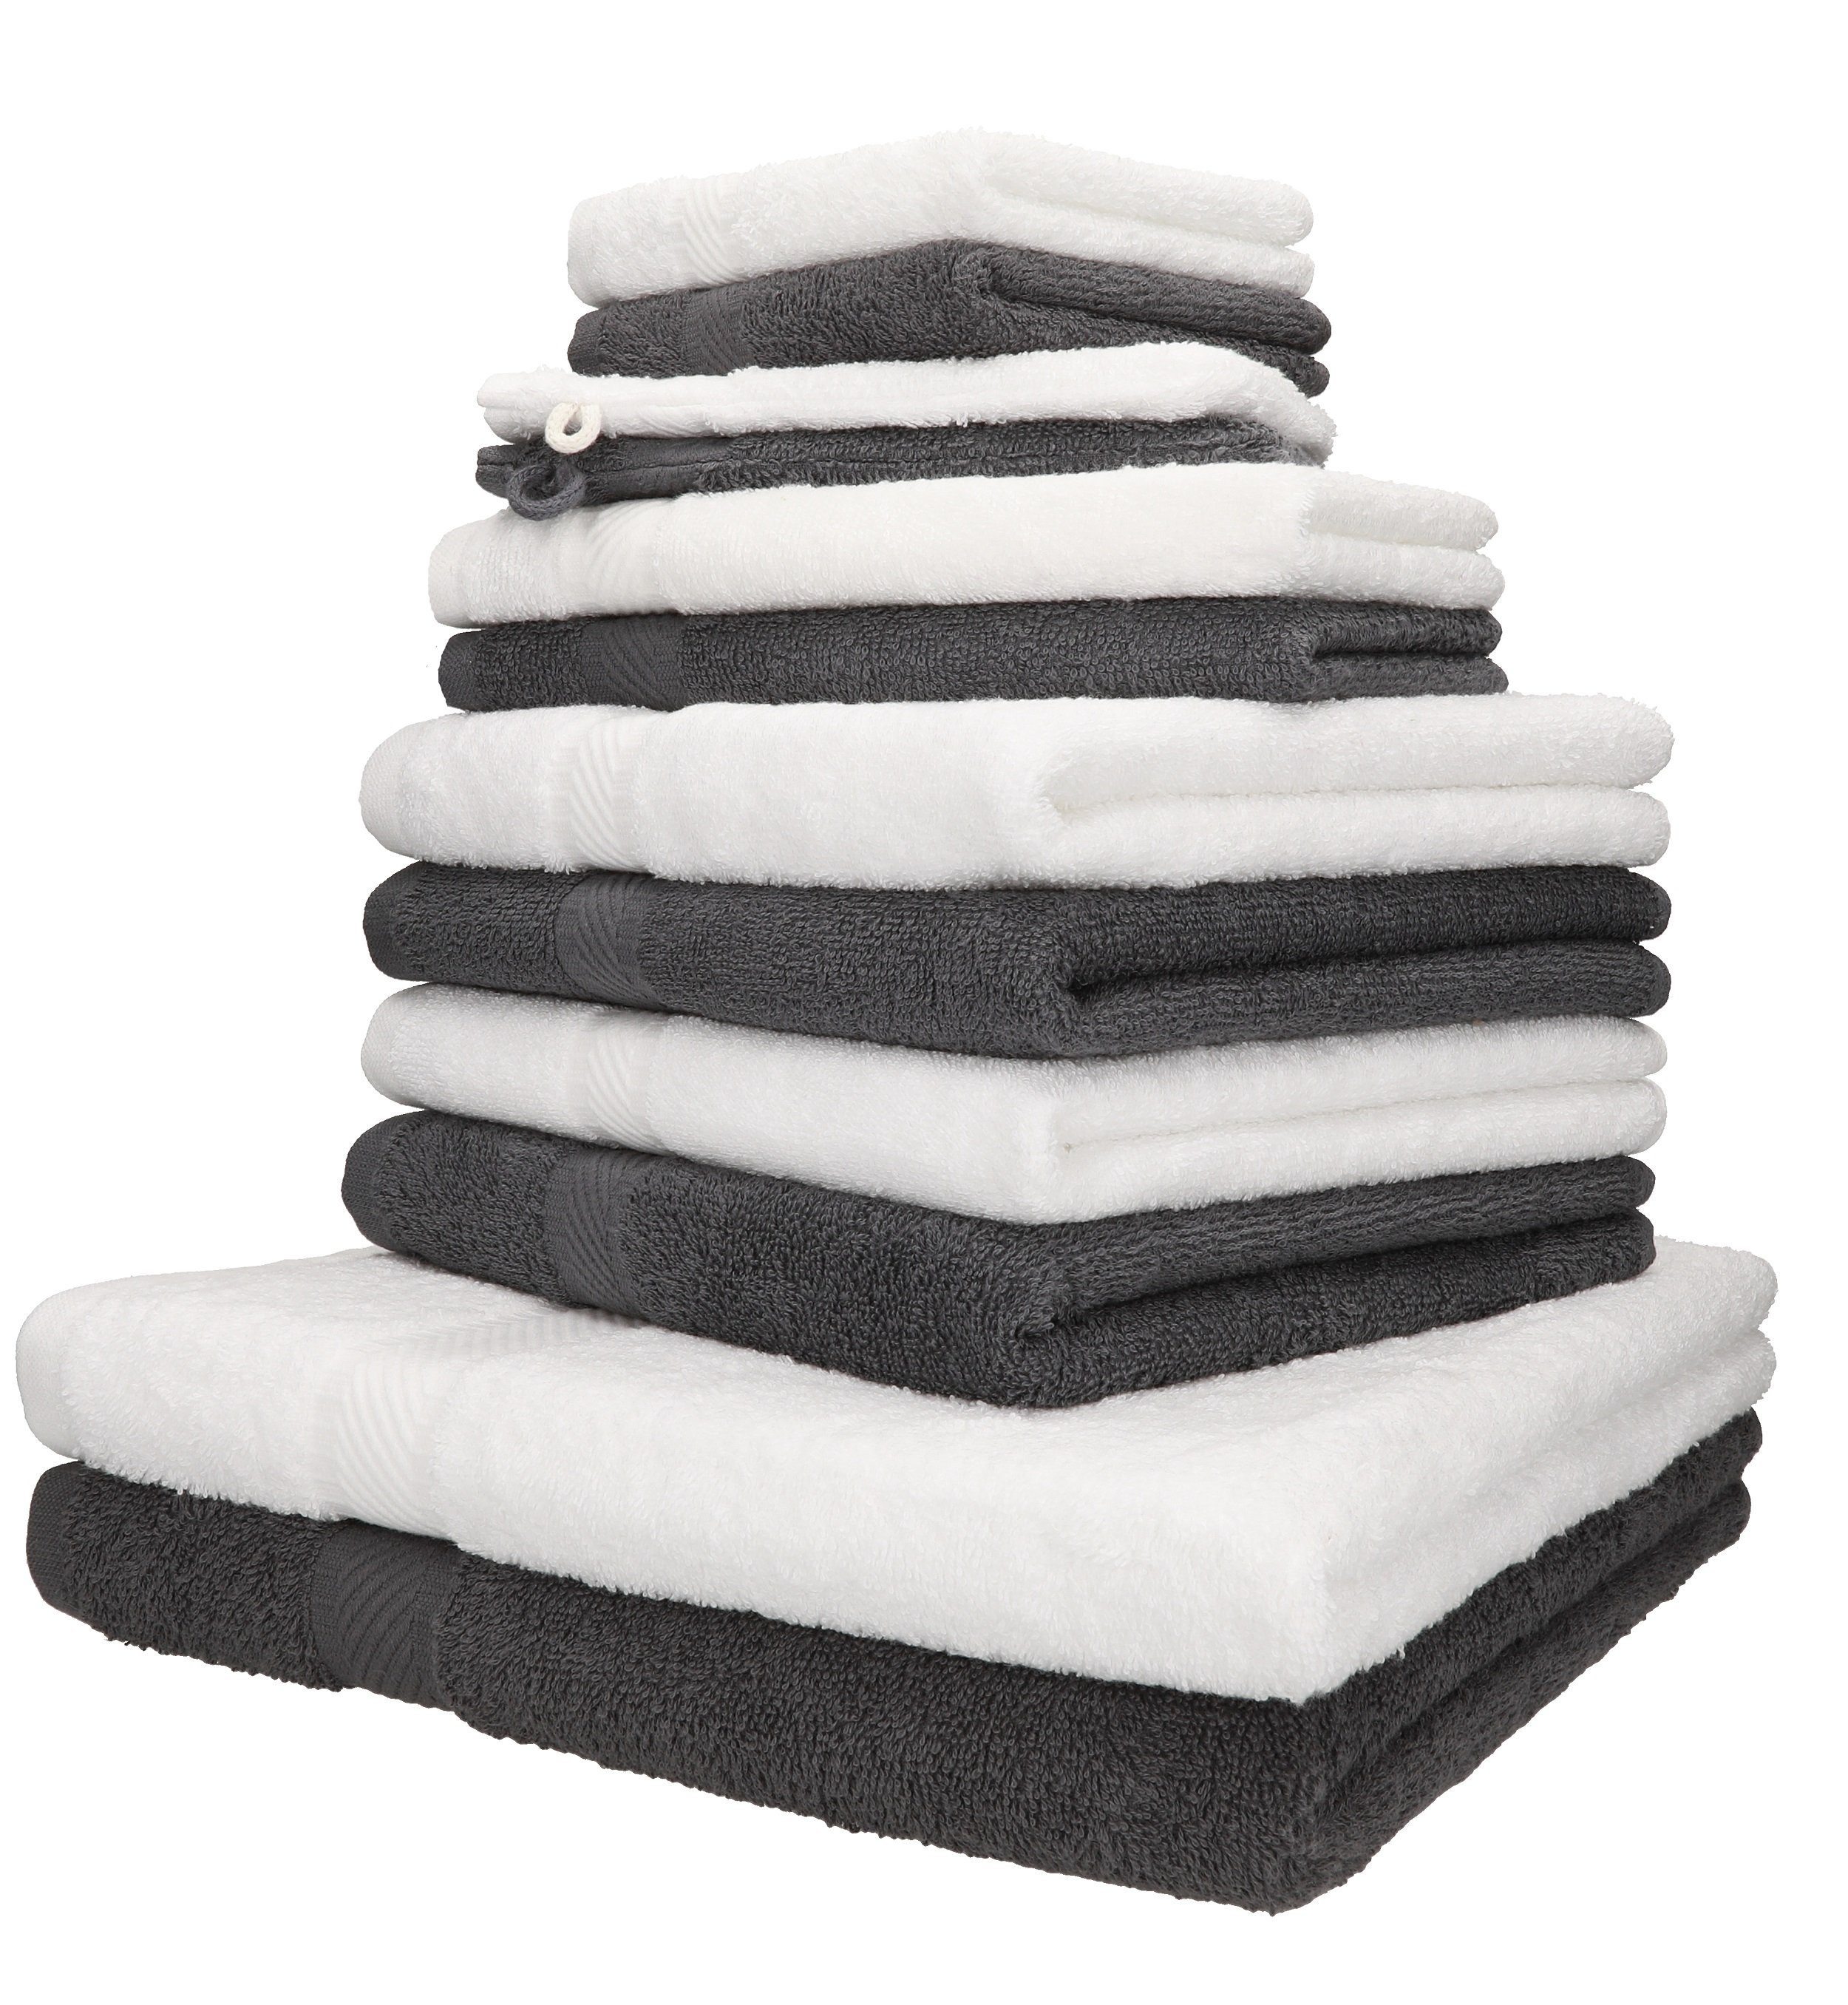 Betz Handtuch Set 12-TLG. Handtuch-Set Palermo 100% Baumwolle 2 Liegetücher 4 Handtücher 2 Gästetücher 2 Seiftücher 2 Waschhandschuhe Farbe anthrazit und weiß, 100% Baumwolle, (12-tlg)